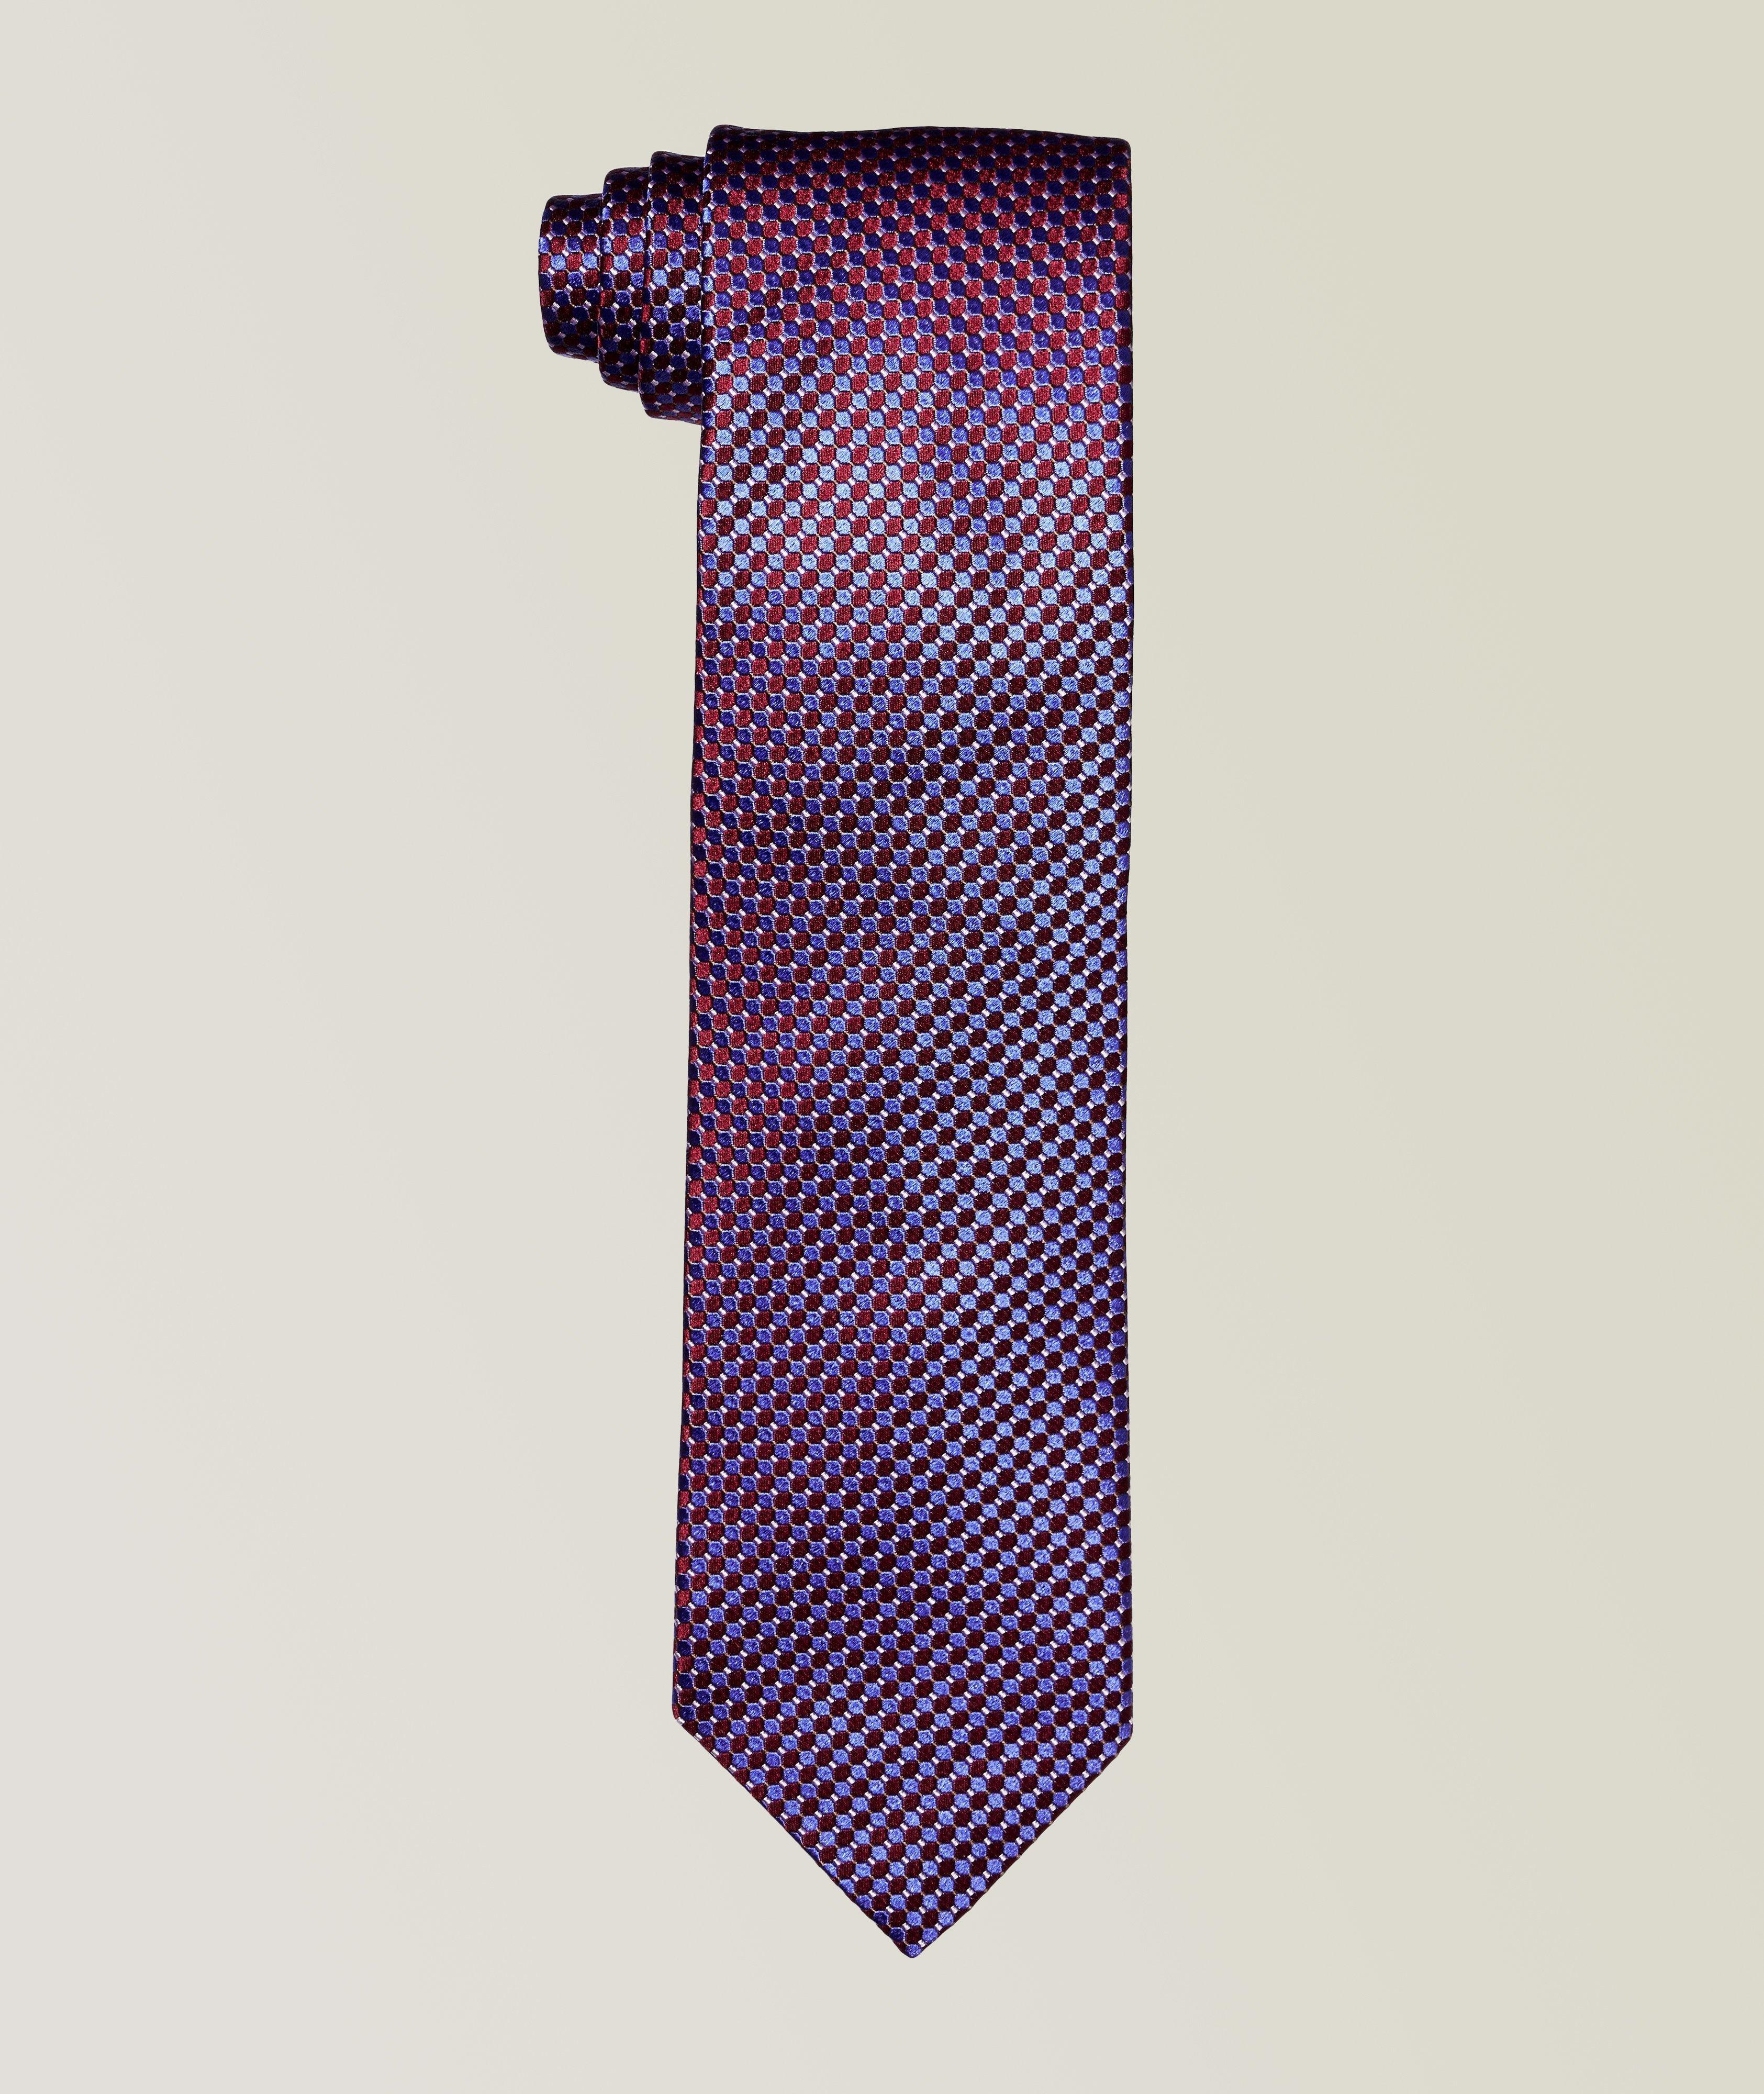 Cravate en soie à motif pointillé image 0